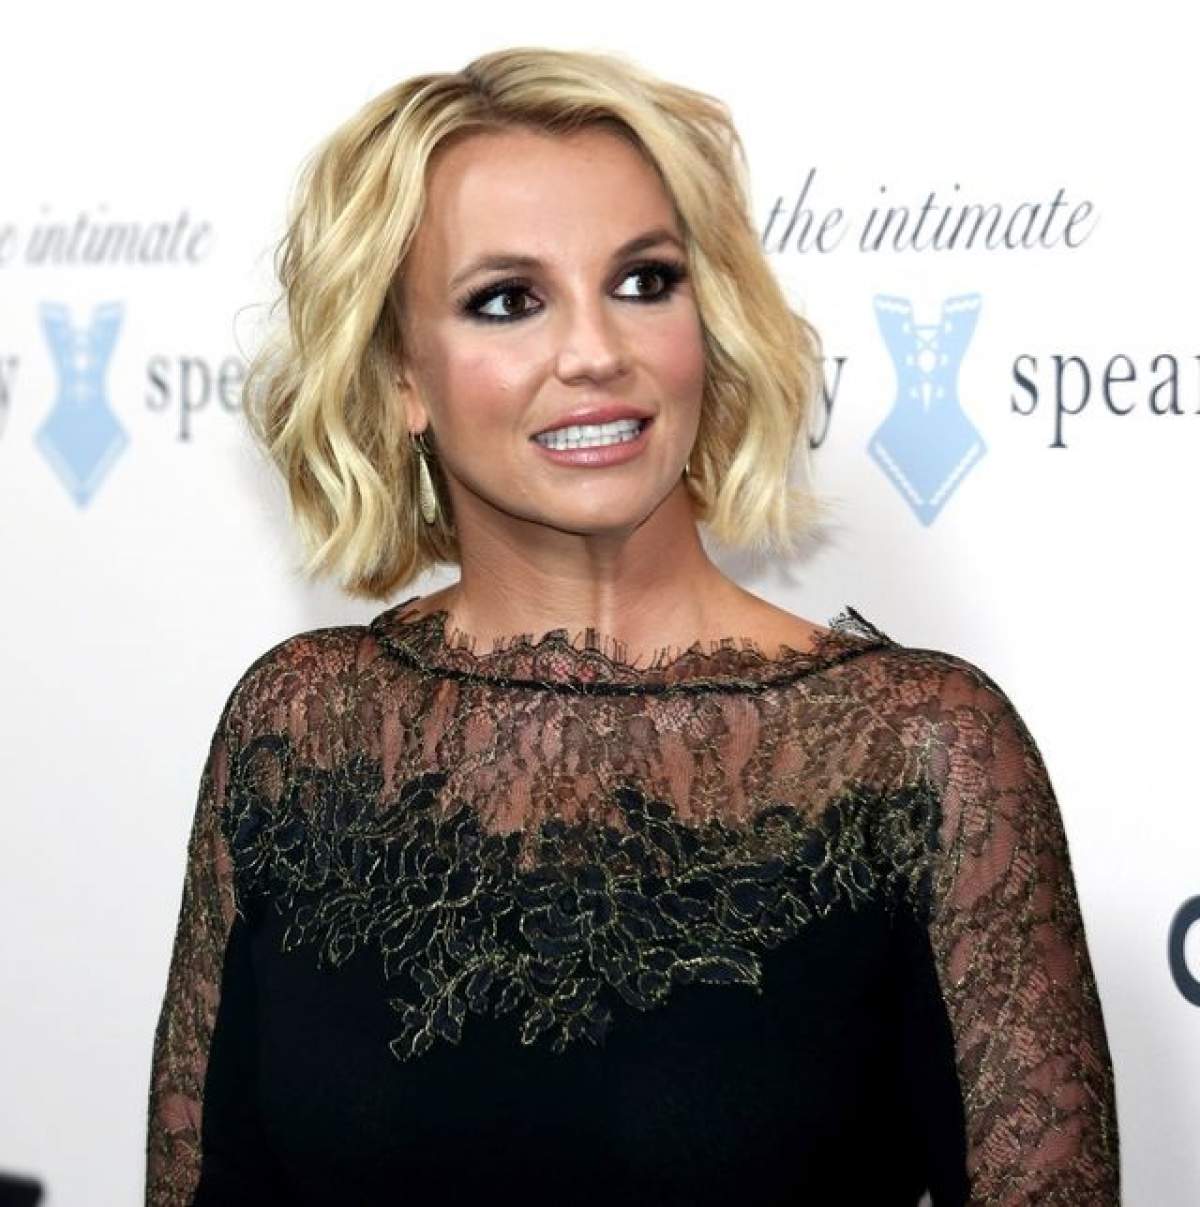 A început 2016 cu o mare lovitură! Britney Spears a făcut cucui în frunte în noaptea dintre ani!